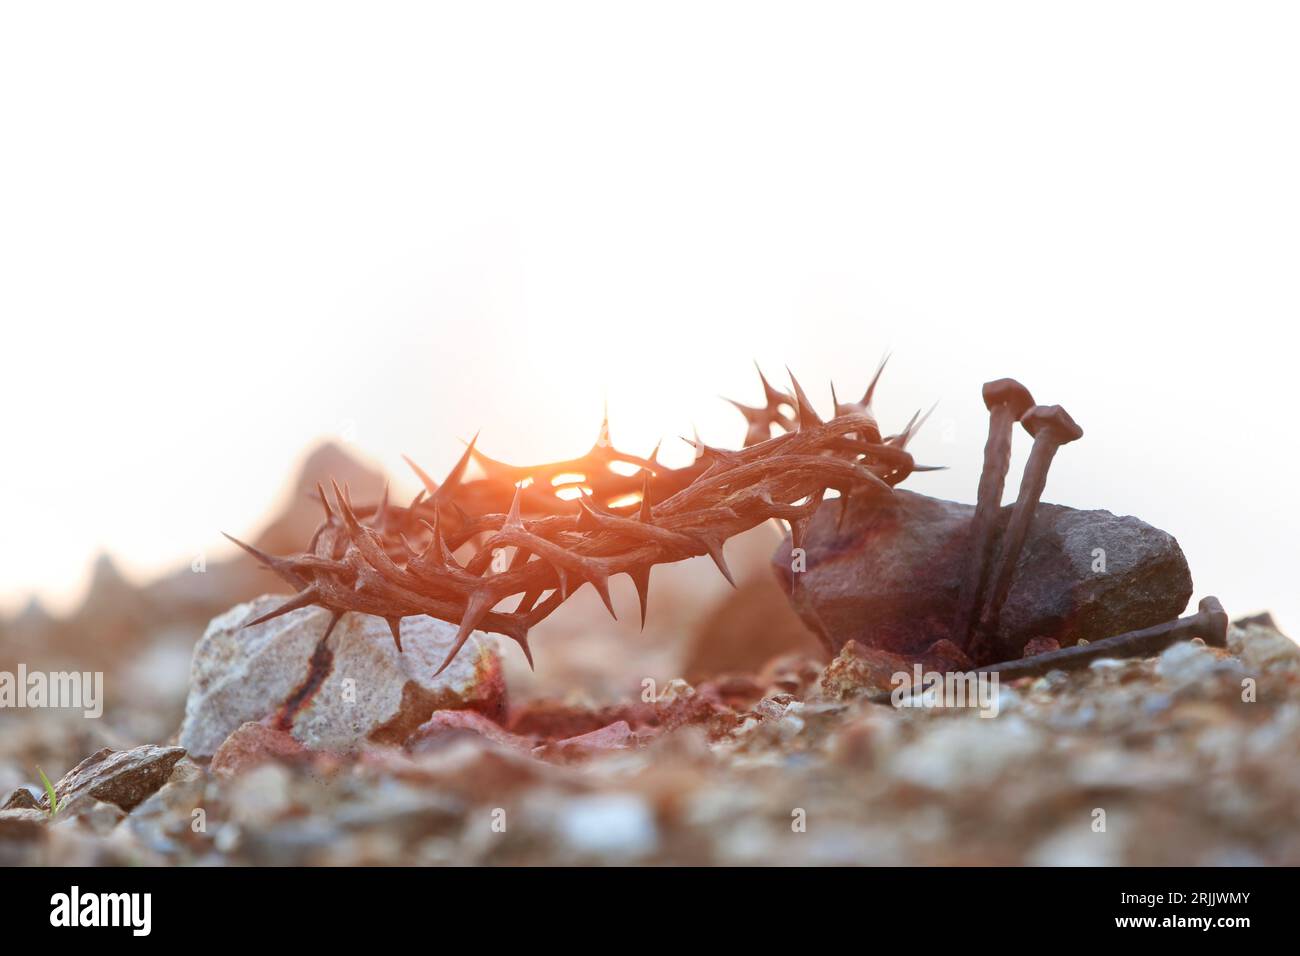 Passionswoche und Fastenzeit-Konzept mit Dornenkrone und Nägeln, die das Opfer und die Leidenschaft Jesu Christi und die Kreuzigung und das Rot symbolisieren Stockfoto